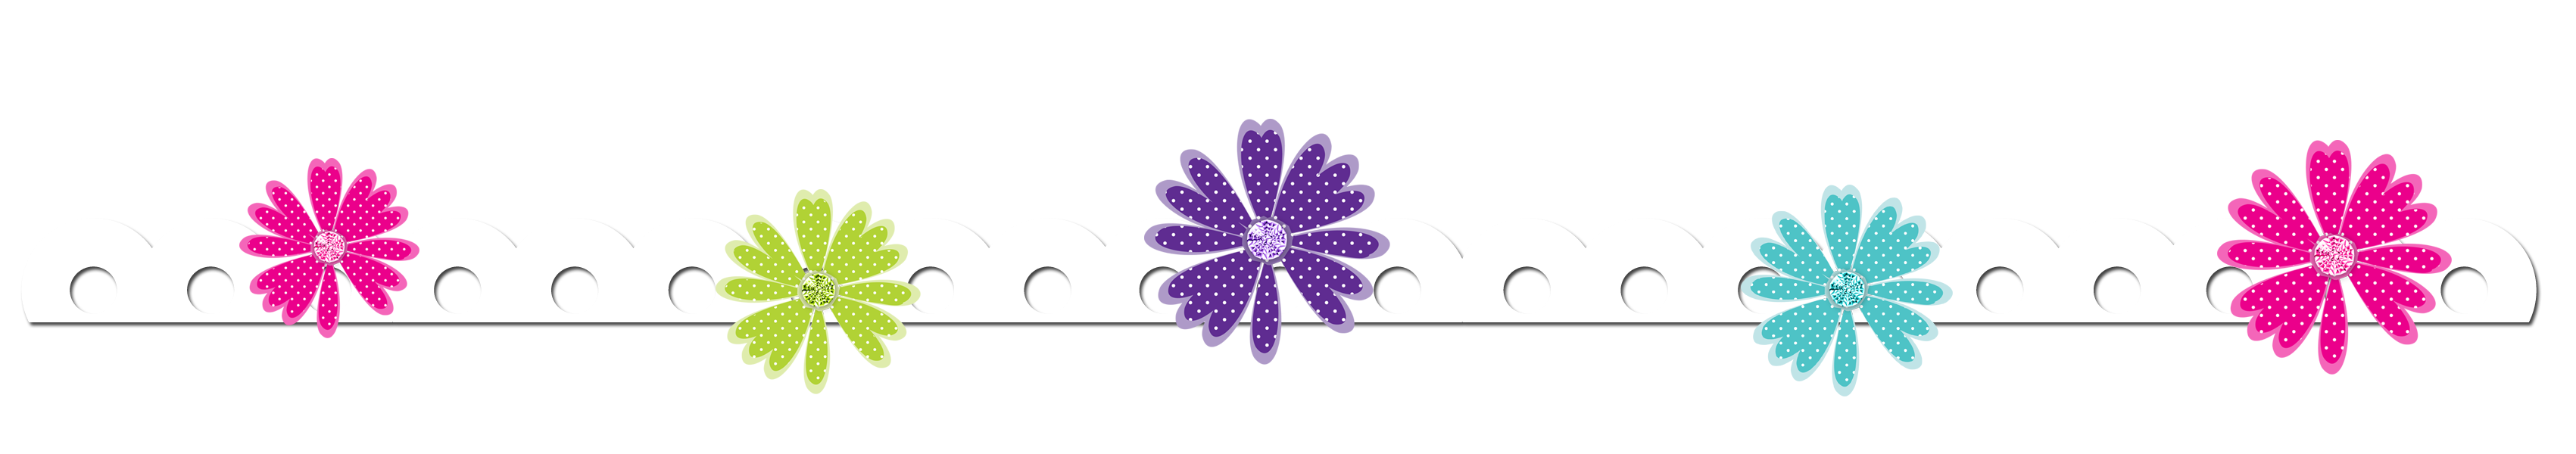 horizontal flower border clip art